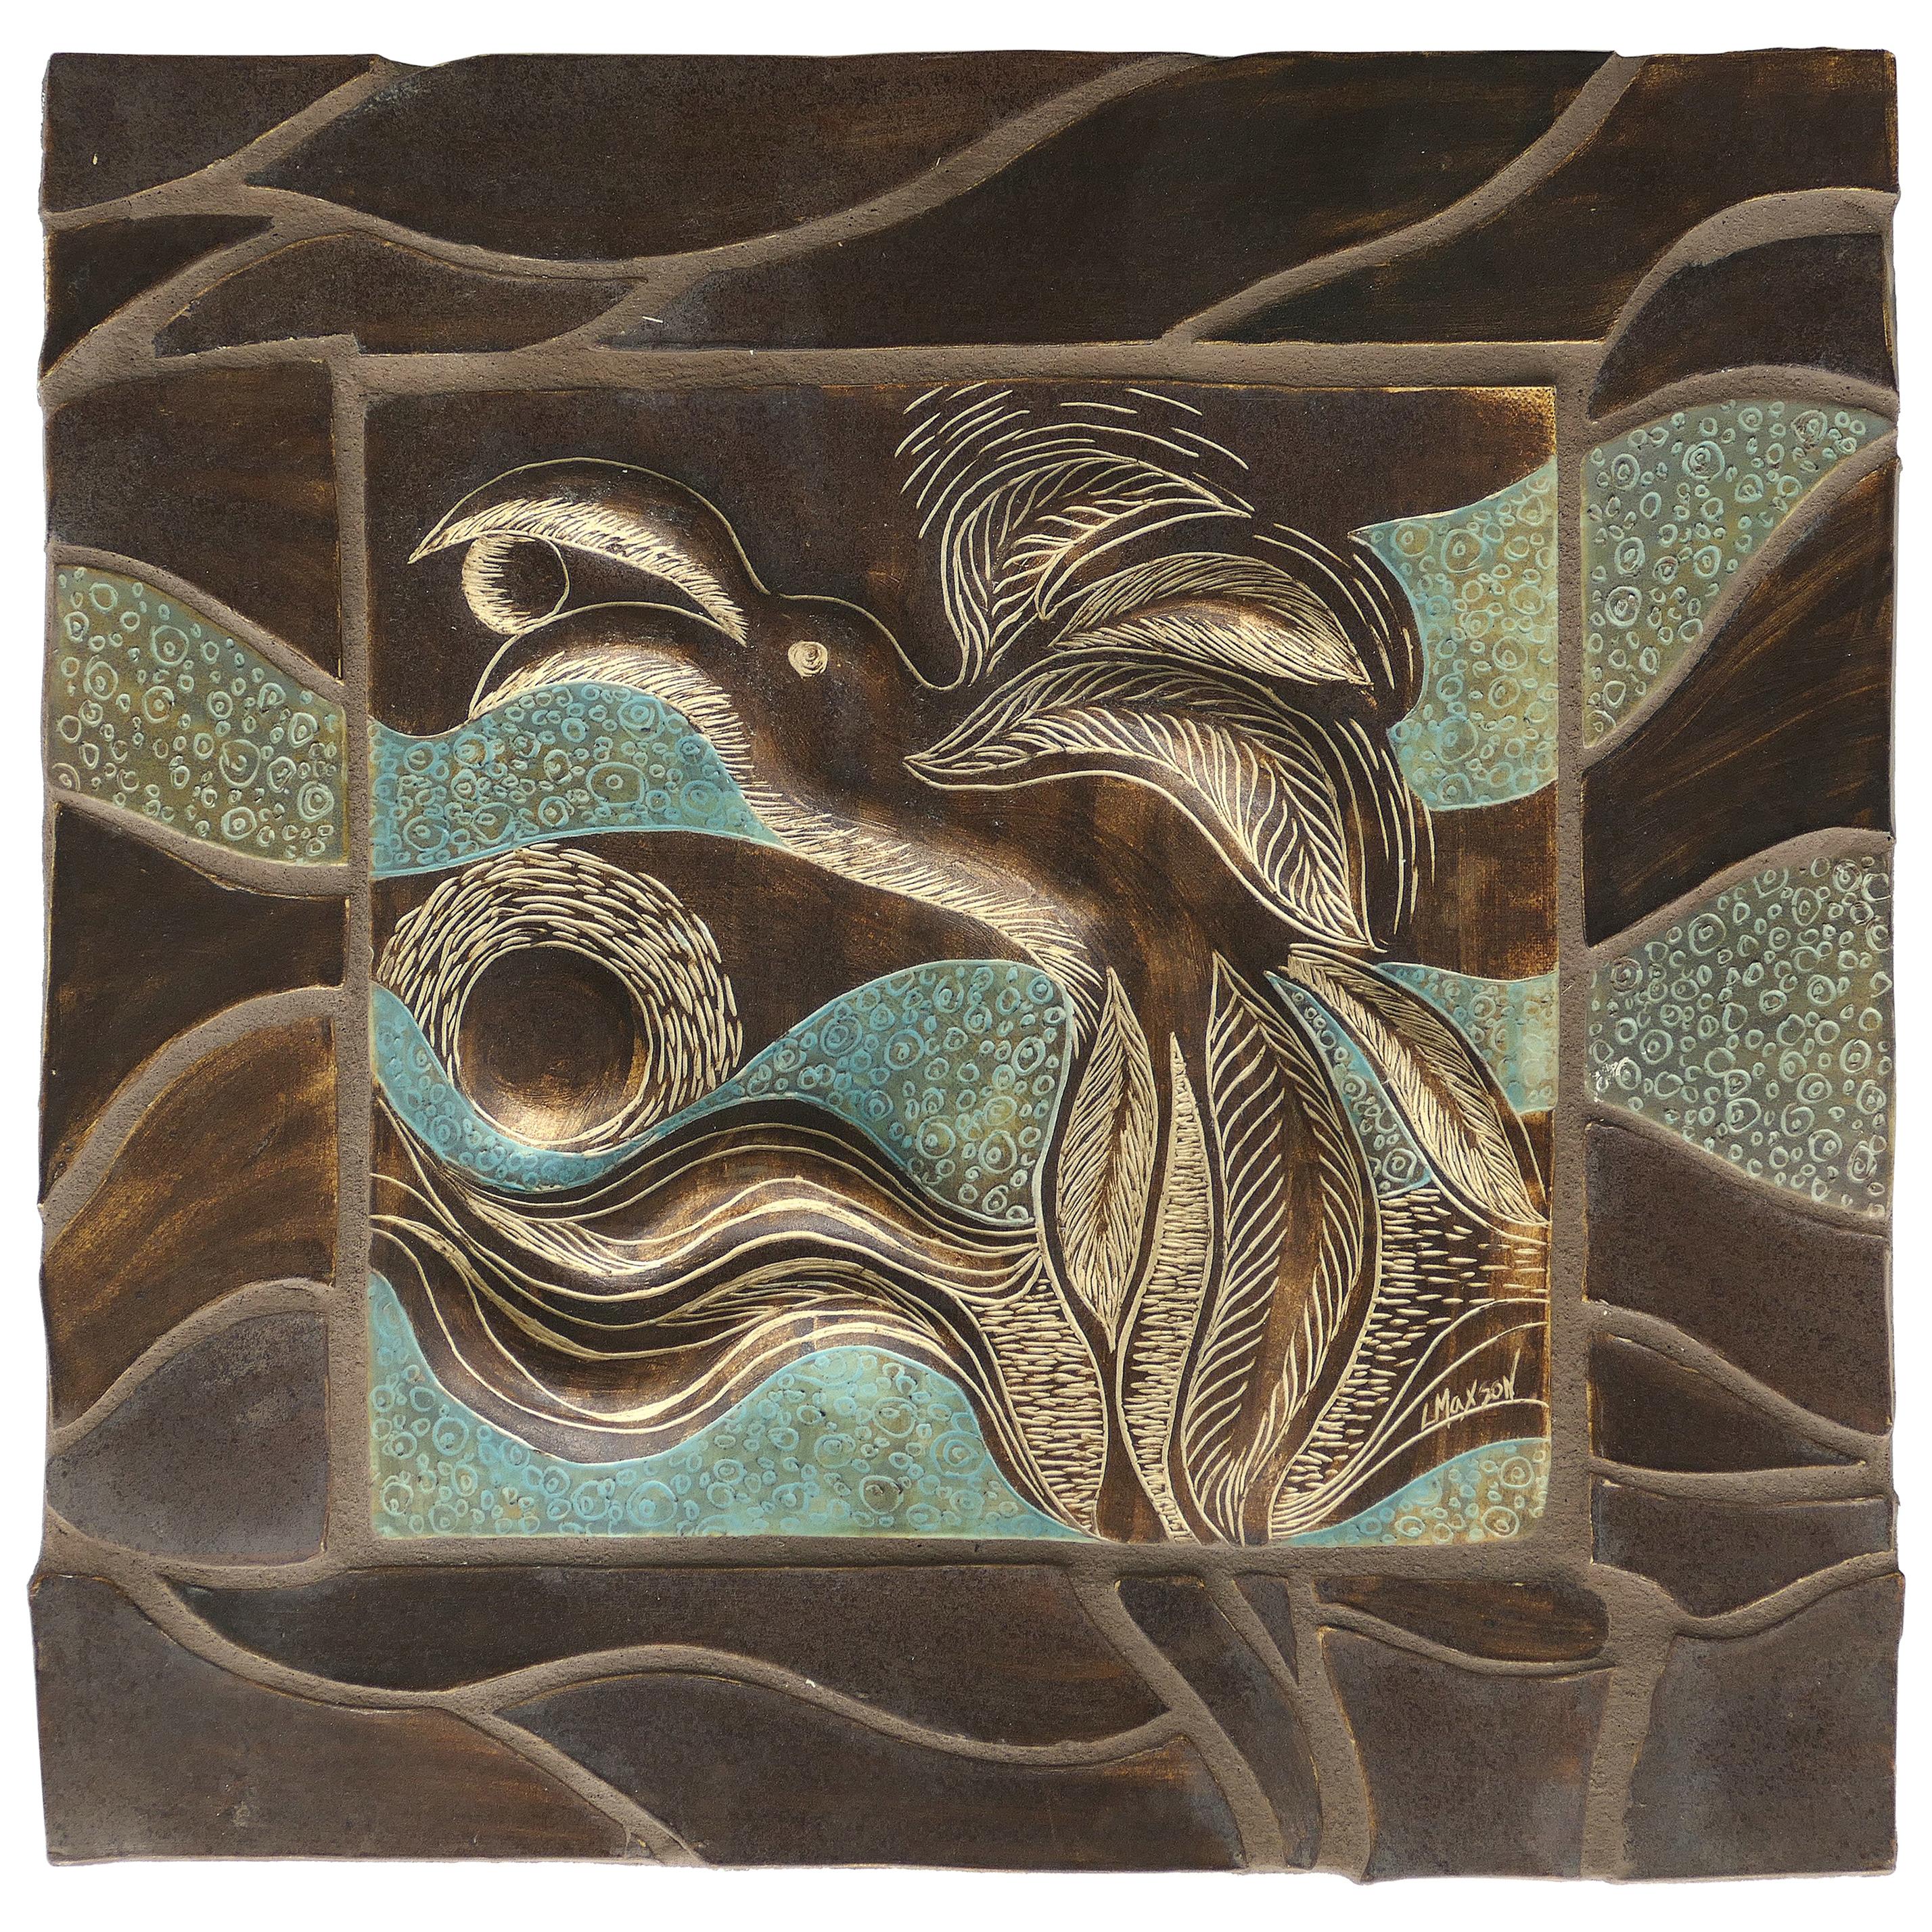 Linda Maxson California Artist Ceramic Plaque Depicting a Bird